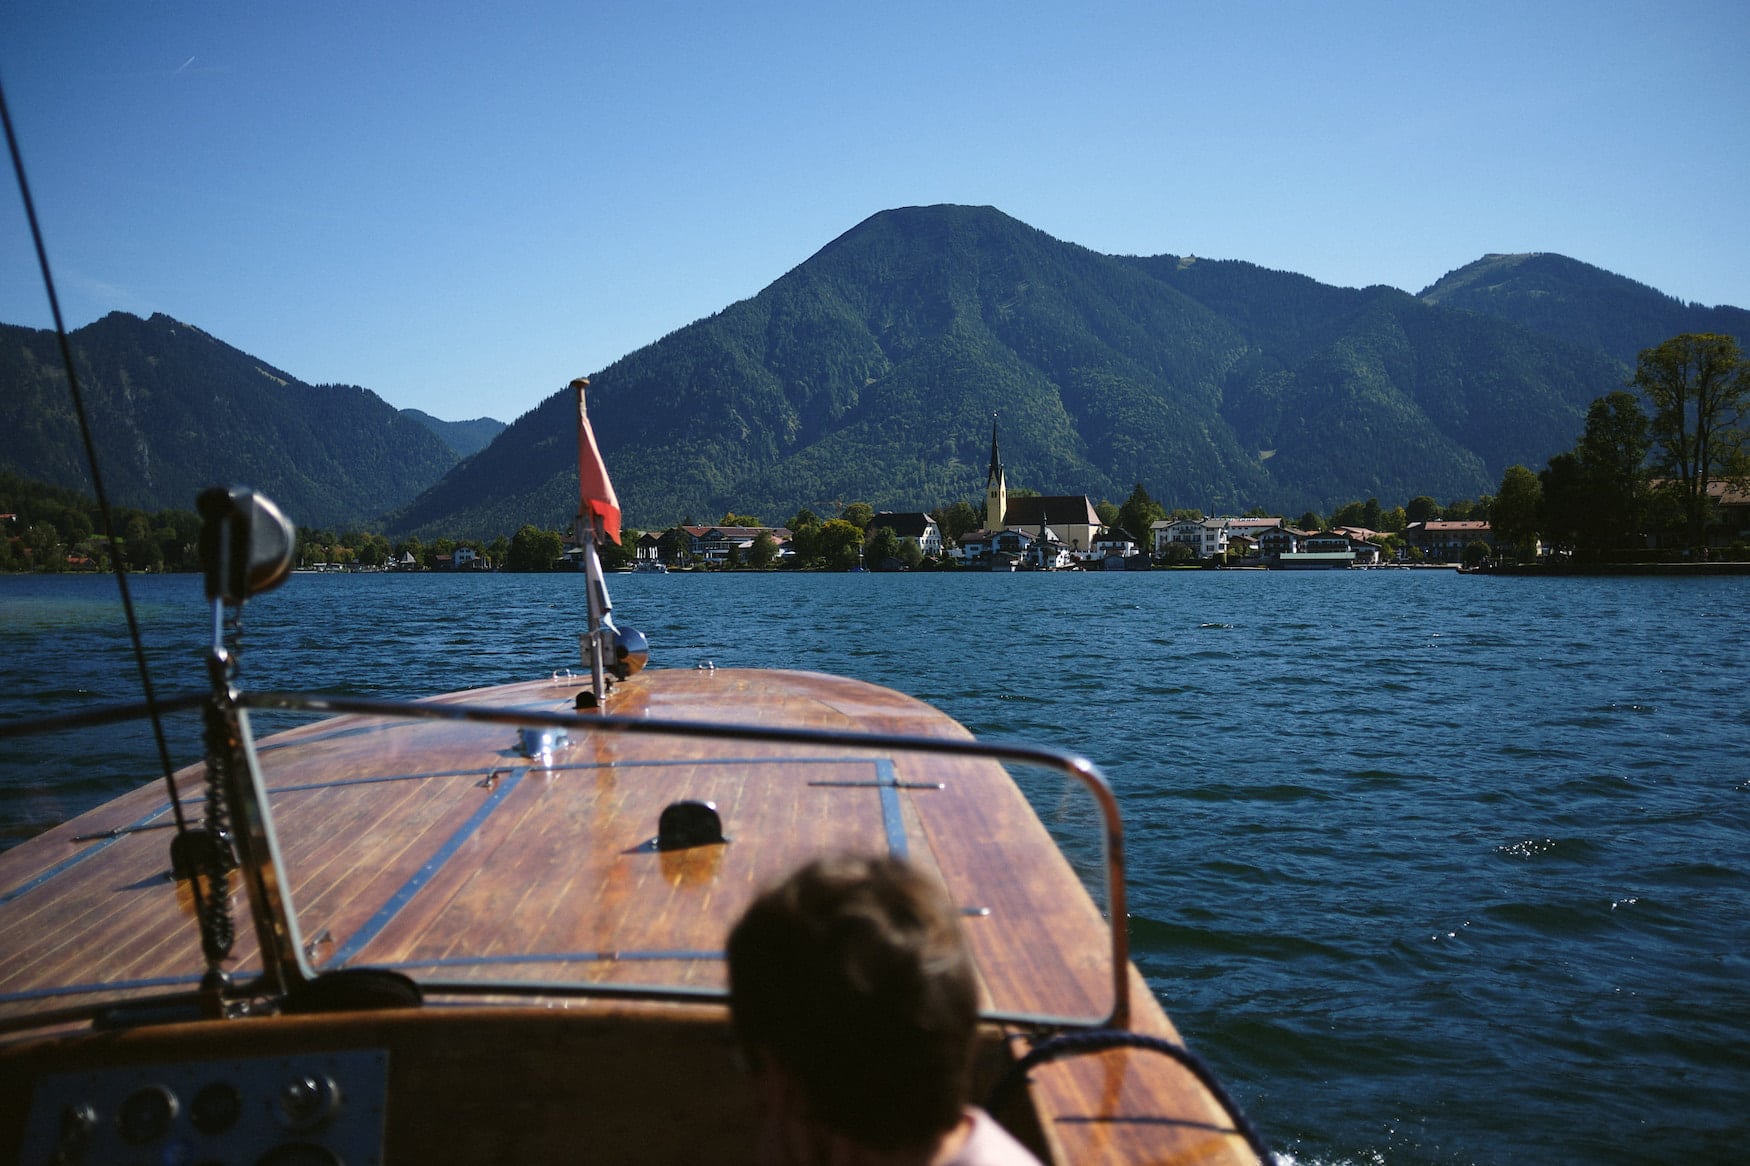 Bootsfahrt über den Tegernsee in Bayern an einem sonnigen Tag